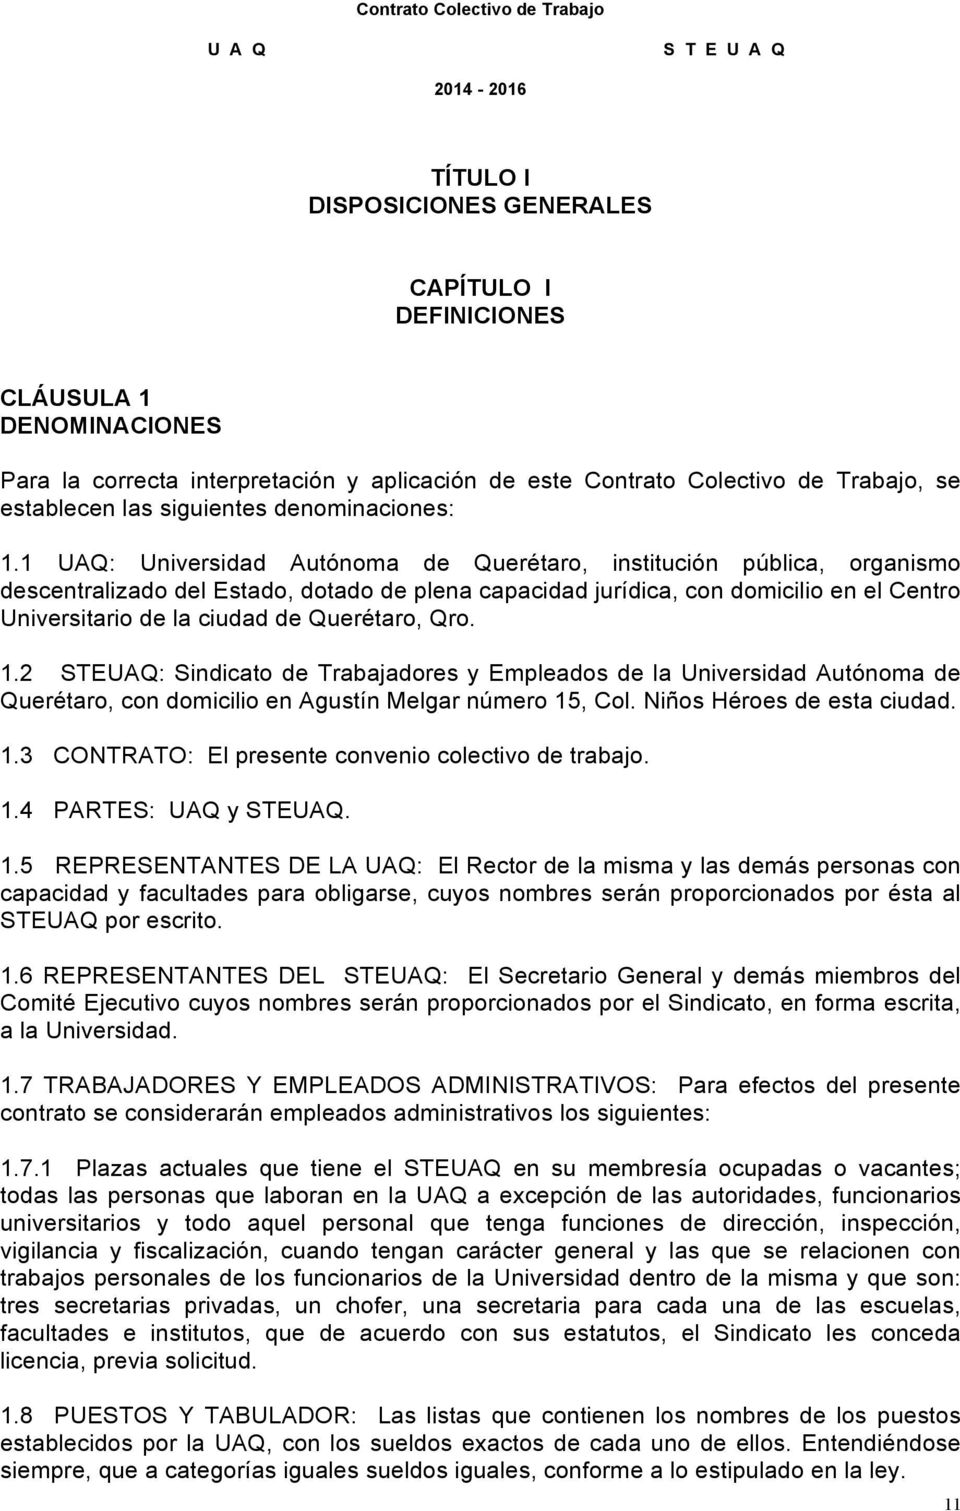 1 UAQ: Universidad Autónoma de Querétaro, institución pública, organismo descentralizado del Estado, dotado de plena capacidad jurídica, con domicilio en el Centro Universitario de la ciudad de